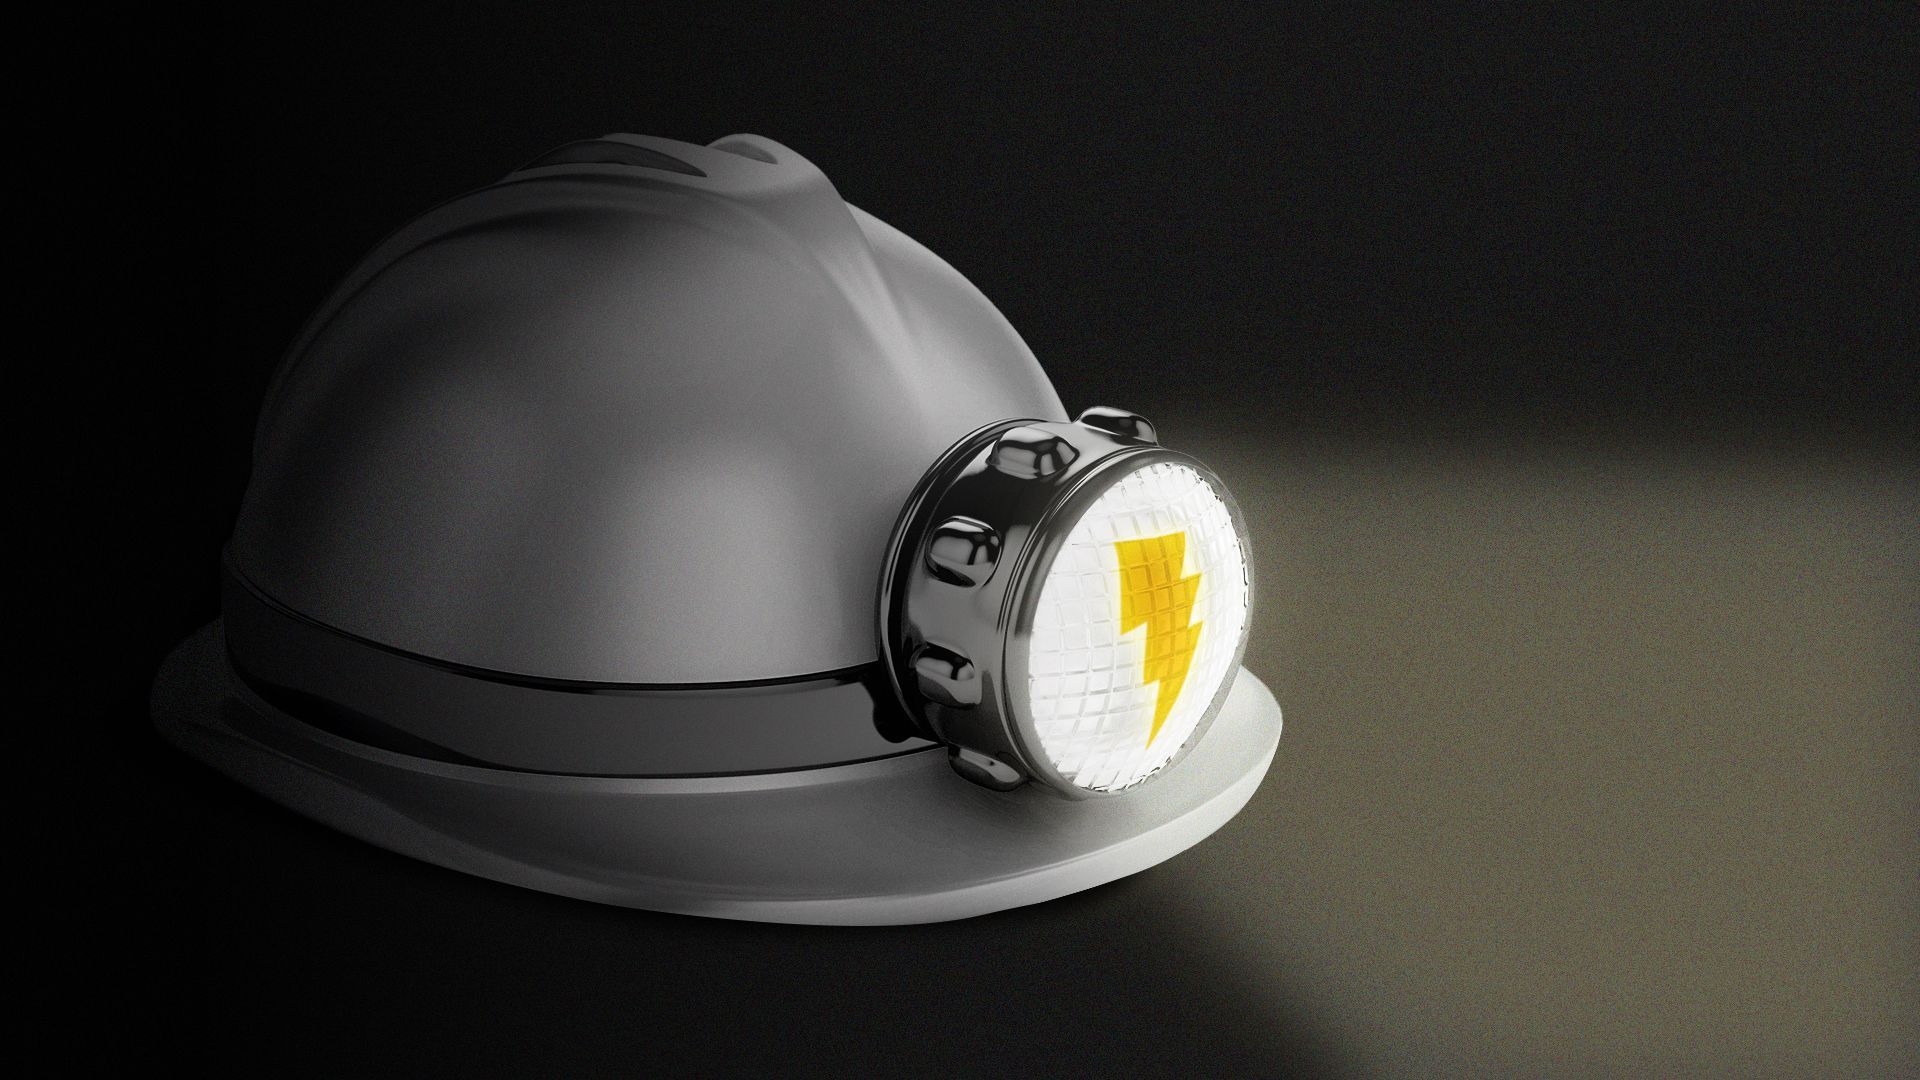 illustration of a mining helmet with a lightning bolt illuminated on the light 